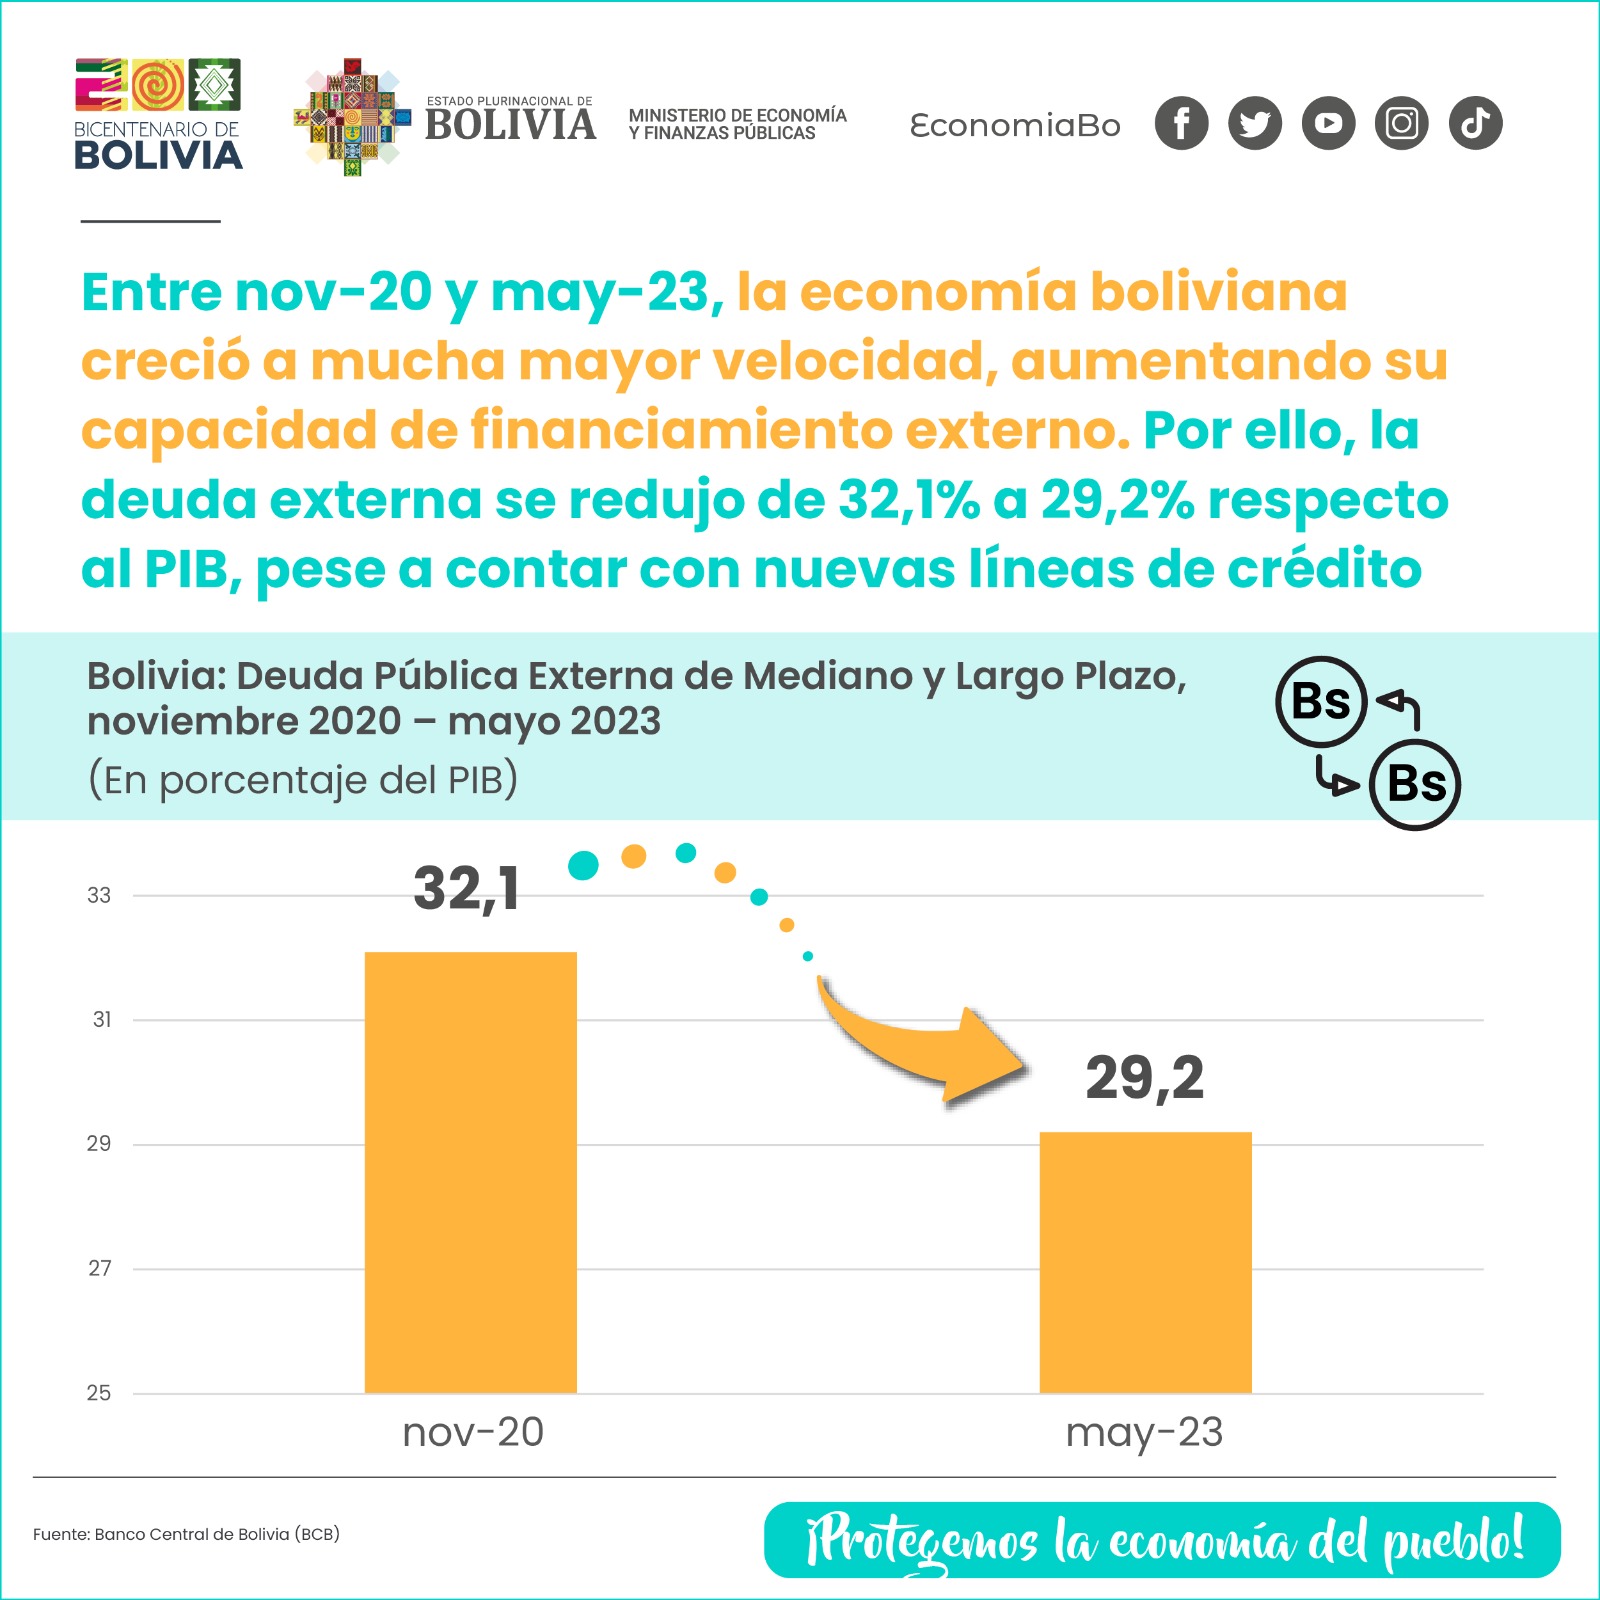 La economía boliviana logra reducir su deuda externa al 29,2% del PIB gracias a un sólido crecimiento y nuevas estrategias financieras